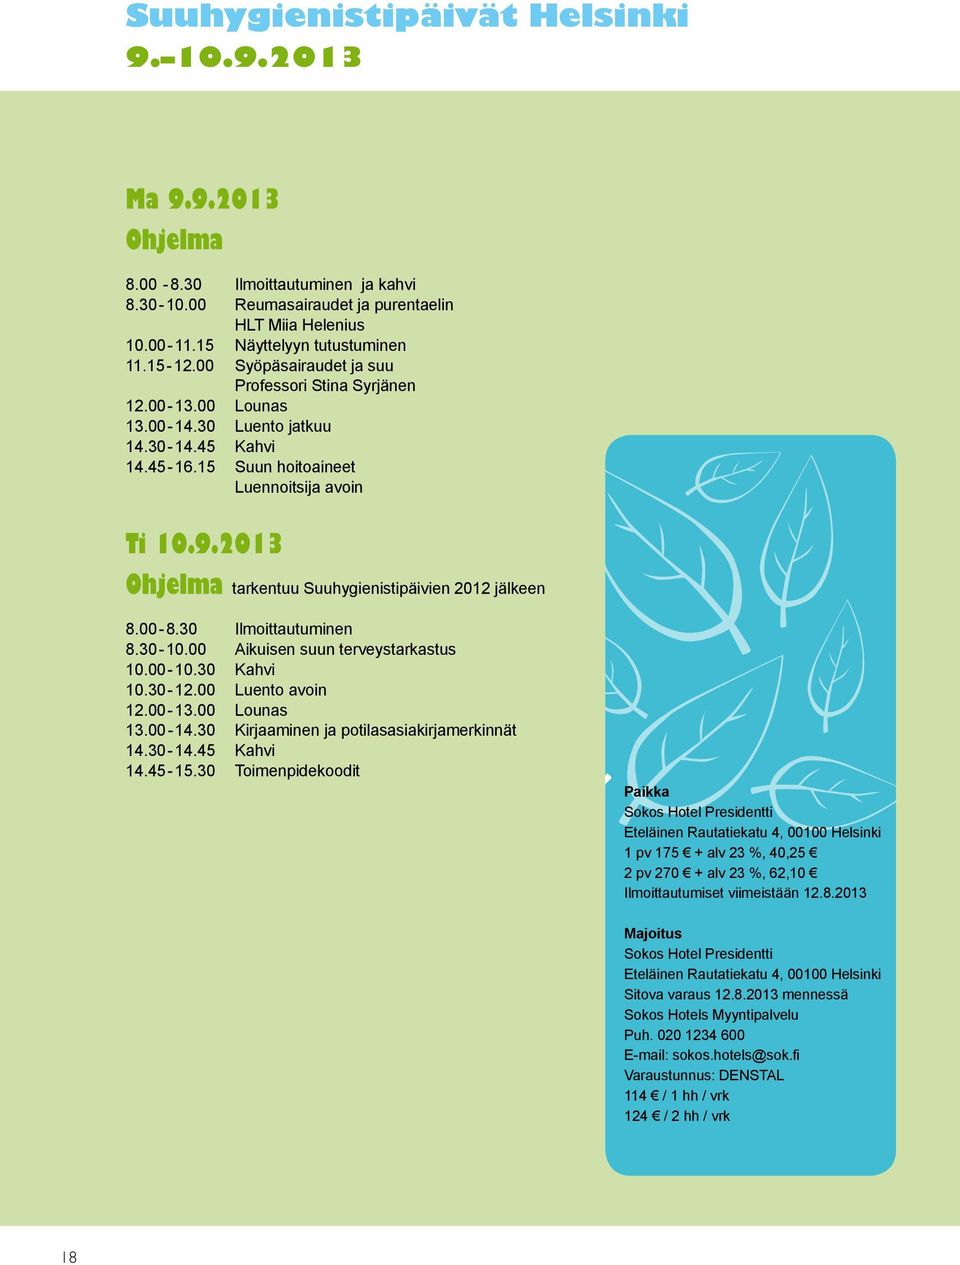 2013 Ohjelma tarkentuu Suuhygienistipäivien 2012 jälkeen 8.00-8.30 Ilmoittautuminen 8.30-10.00 Aikuisen suun terveystarkastus 10.00-10.30 Kahvi 10.30-12.00 Luento avoin 12.00-13.00 Lounas 13.00-14.